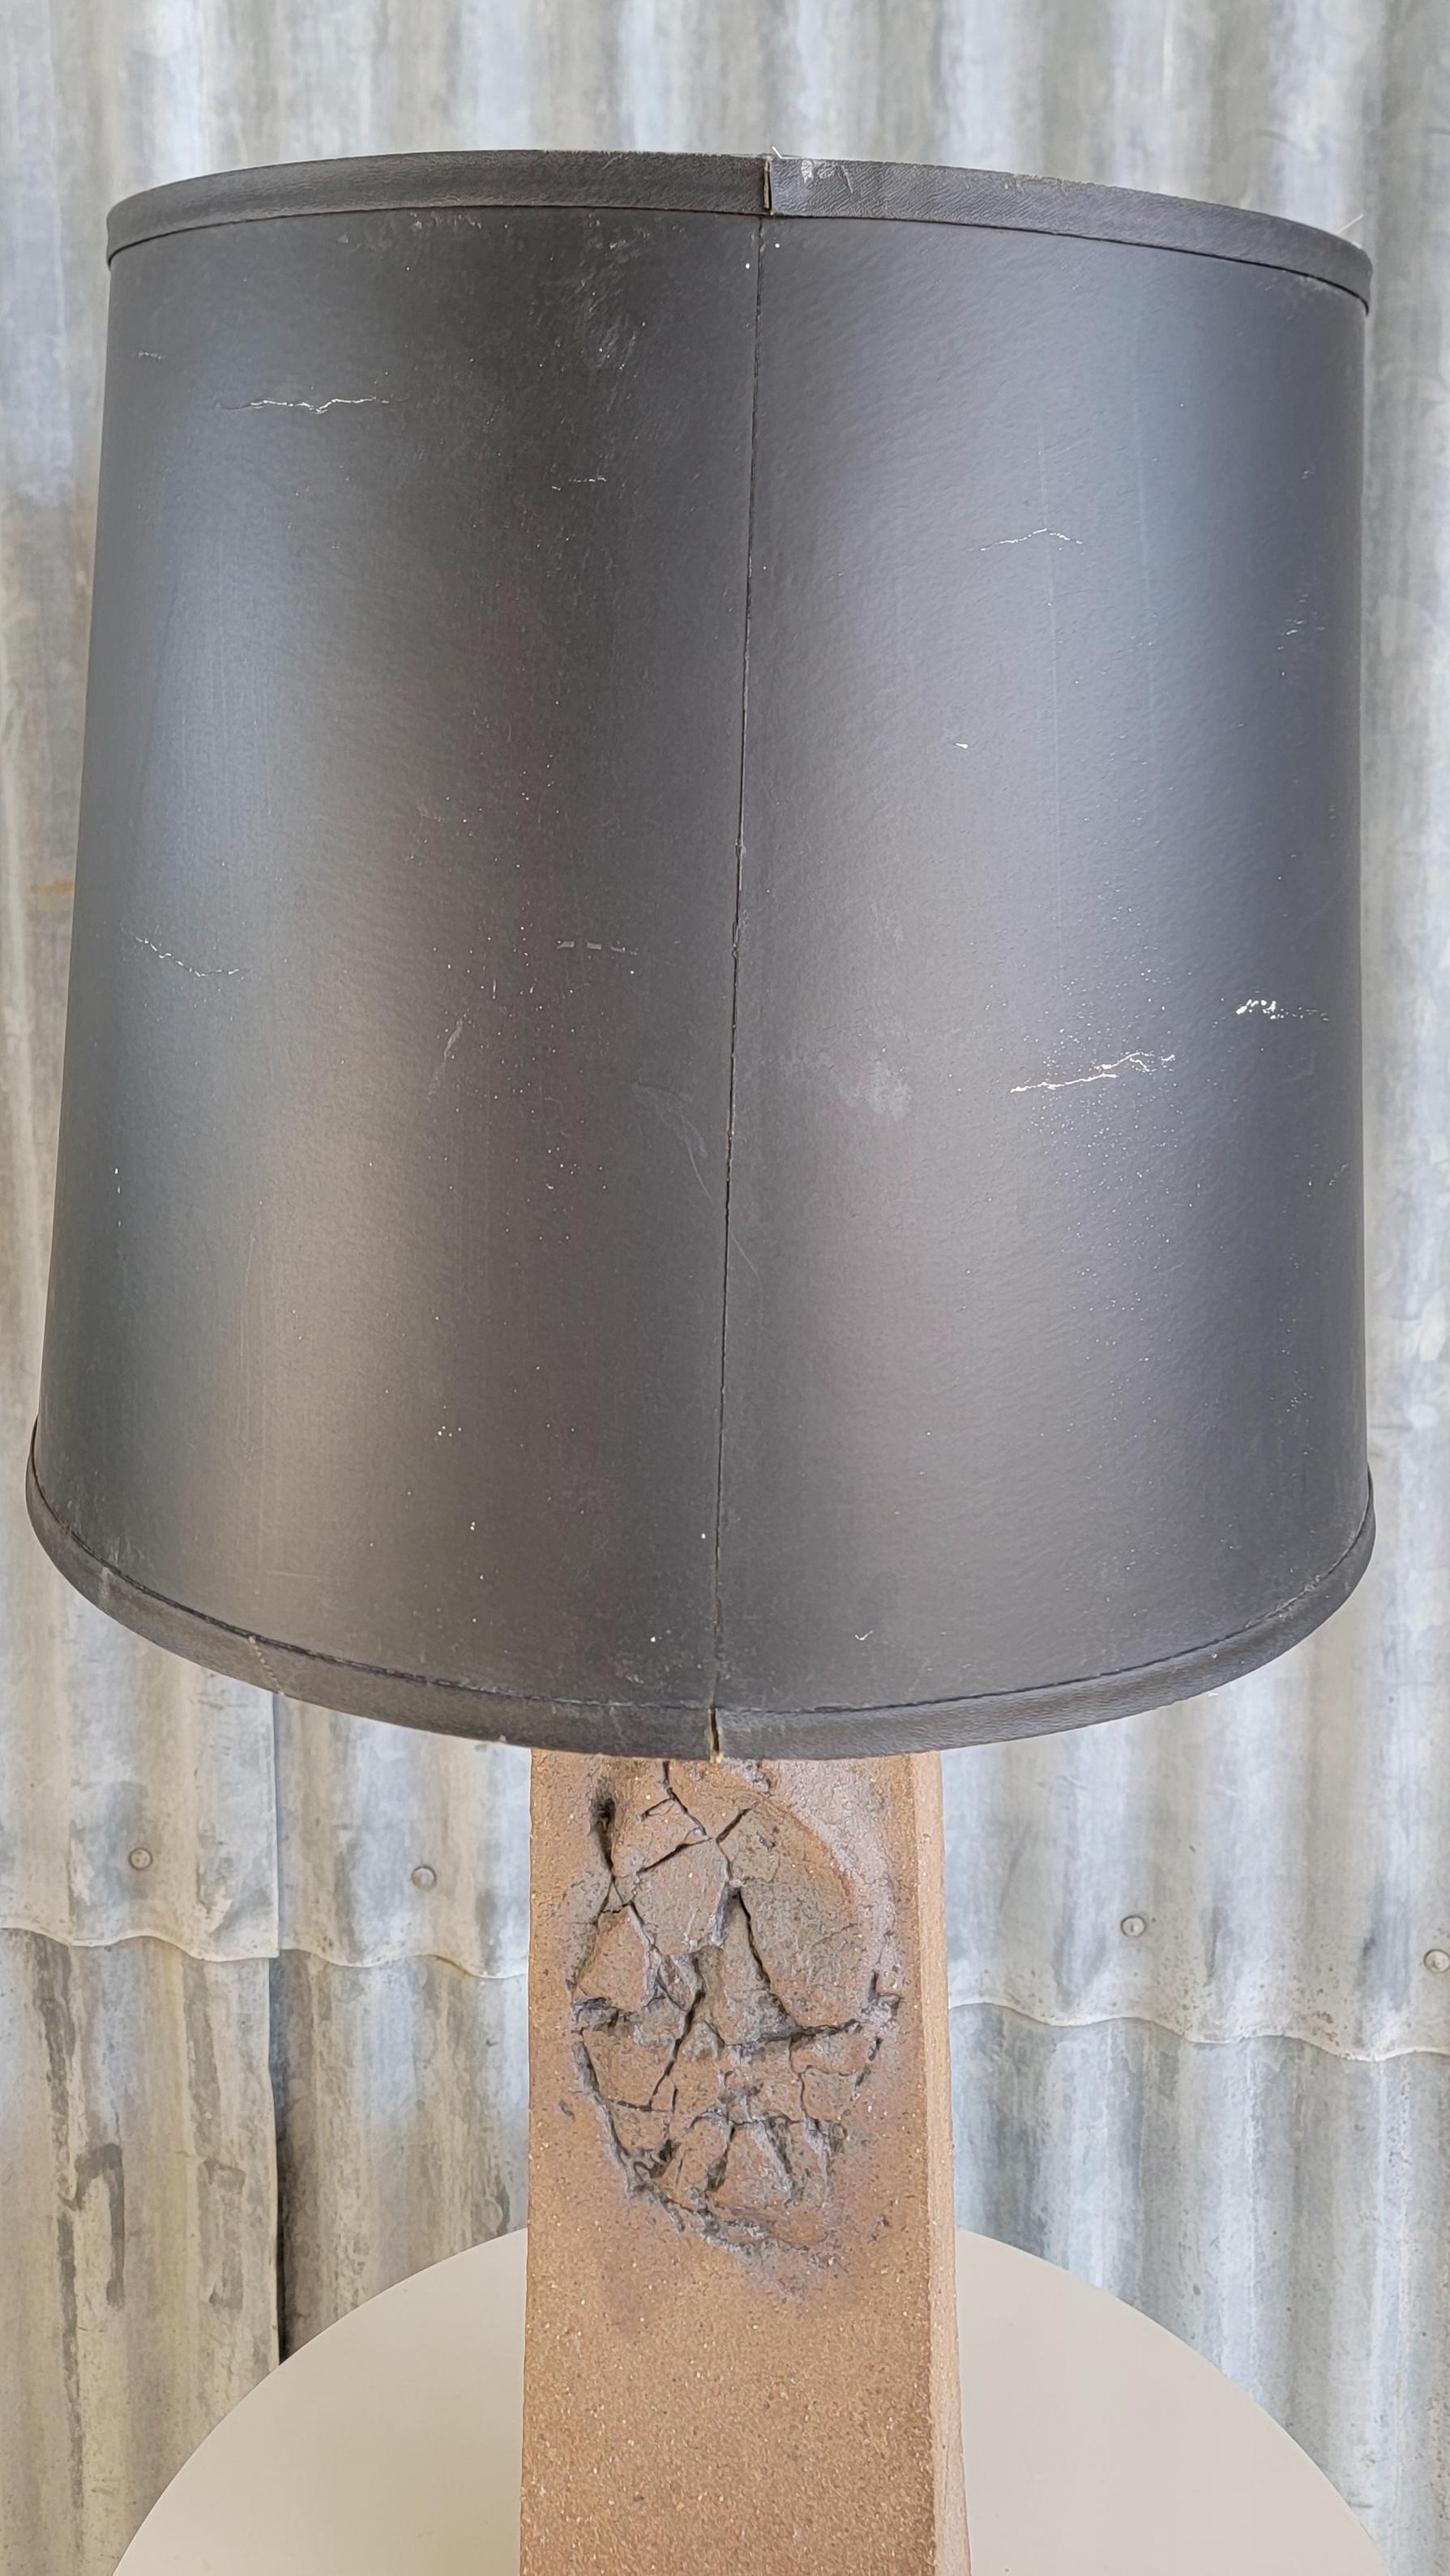 Lampe de table brutaliste avec 3 symboles incisés. Abat-jour original Foss. L'abat-jour seul mesure 15,5 pouces de diamètre, 16,75 pouces de haut. La base en terre cuite seule mesure 16,75 pouces de haut, 5,38 pouces de côté. 